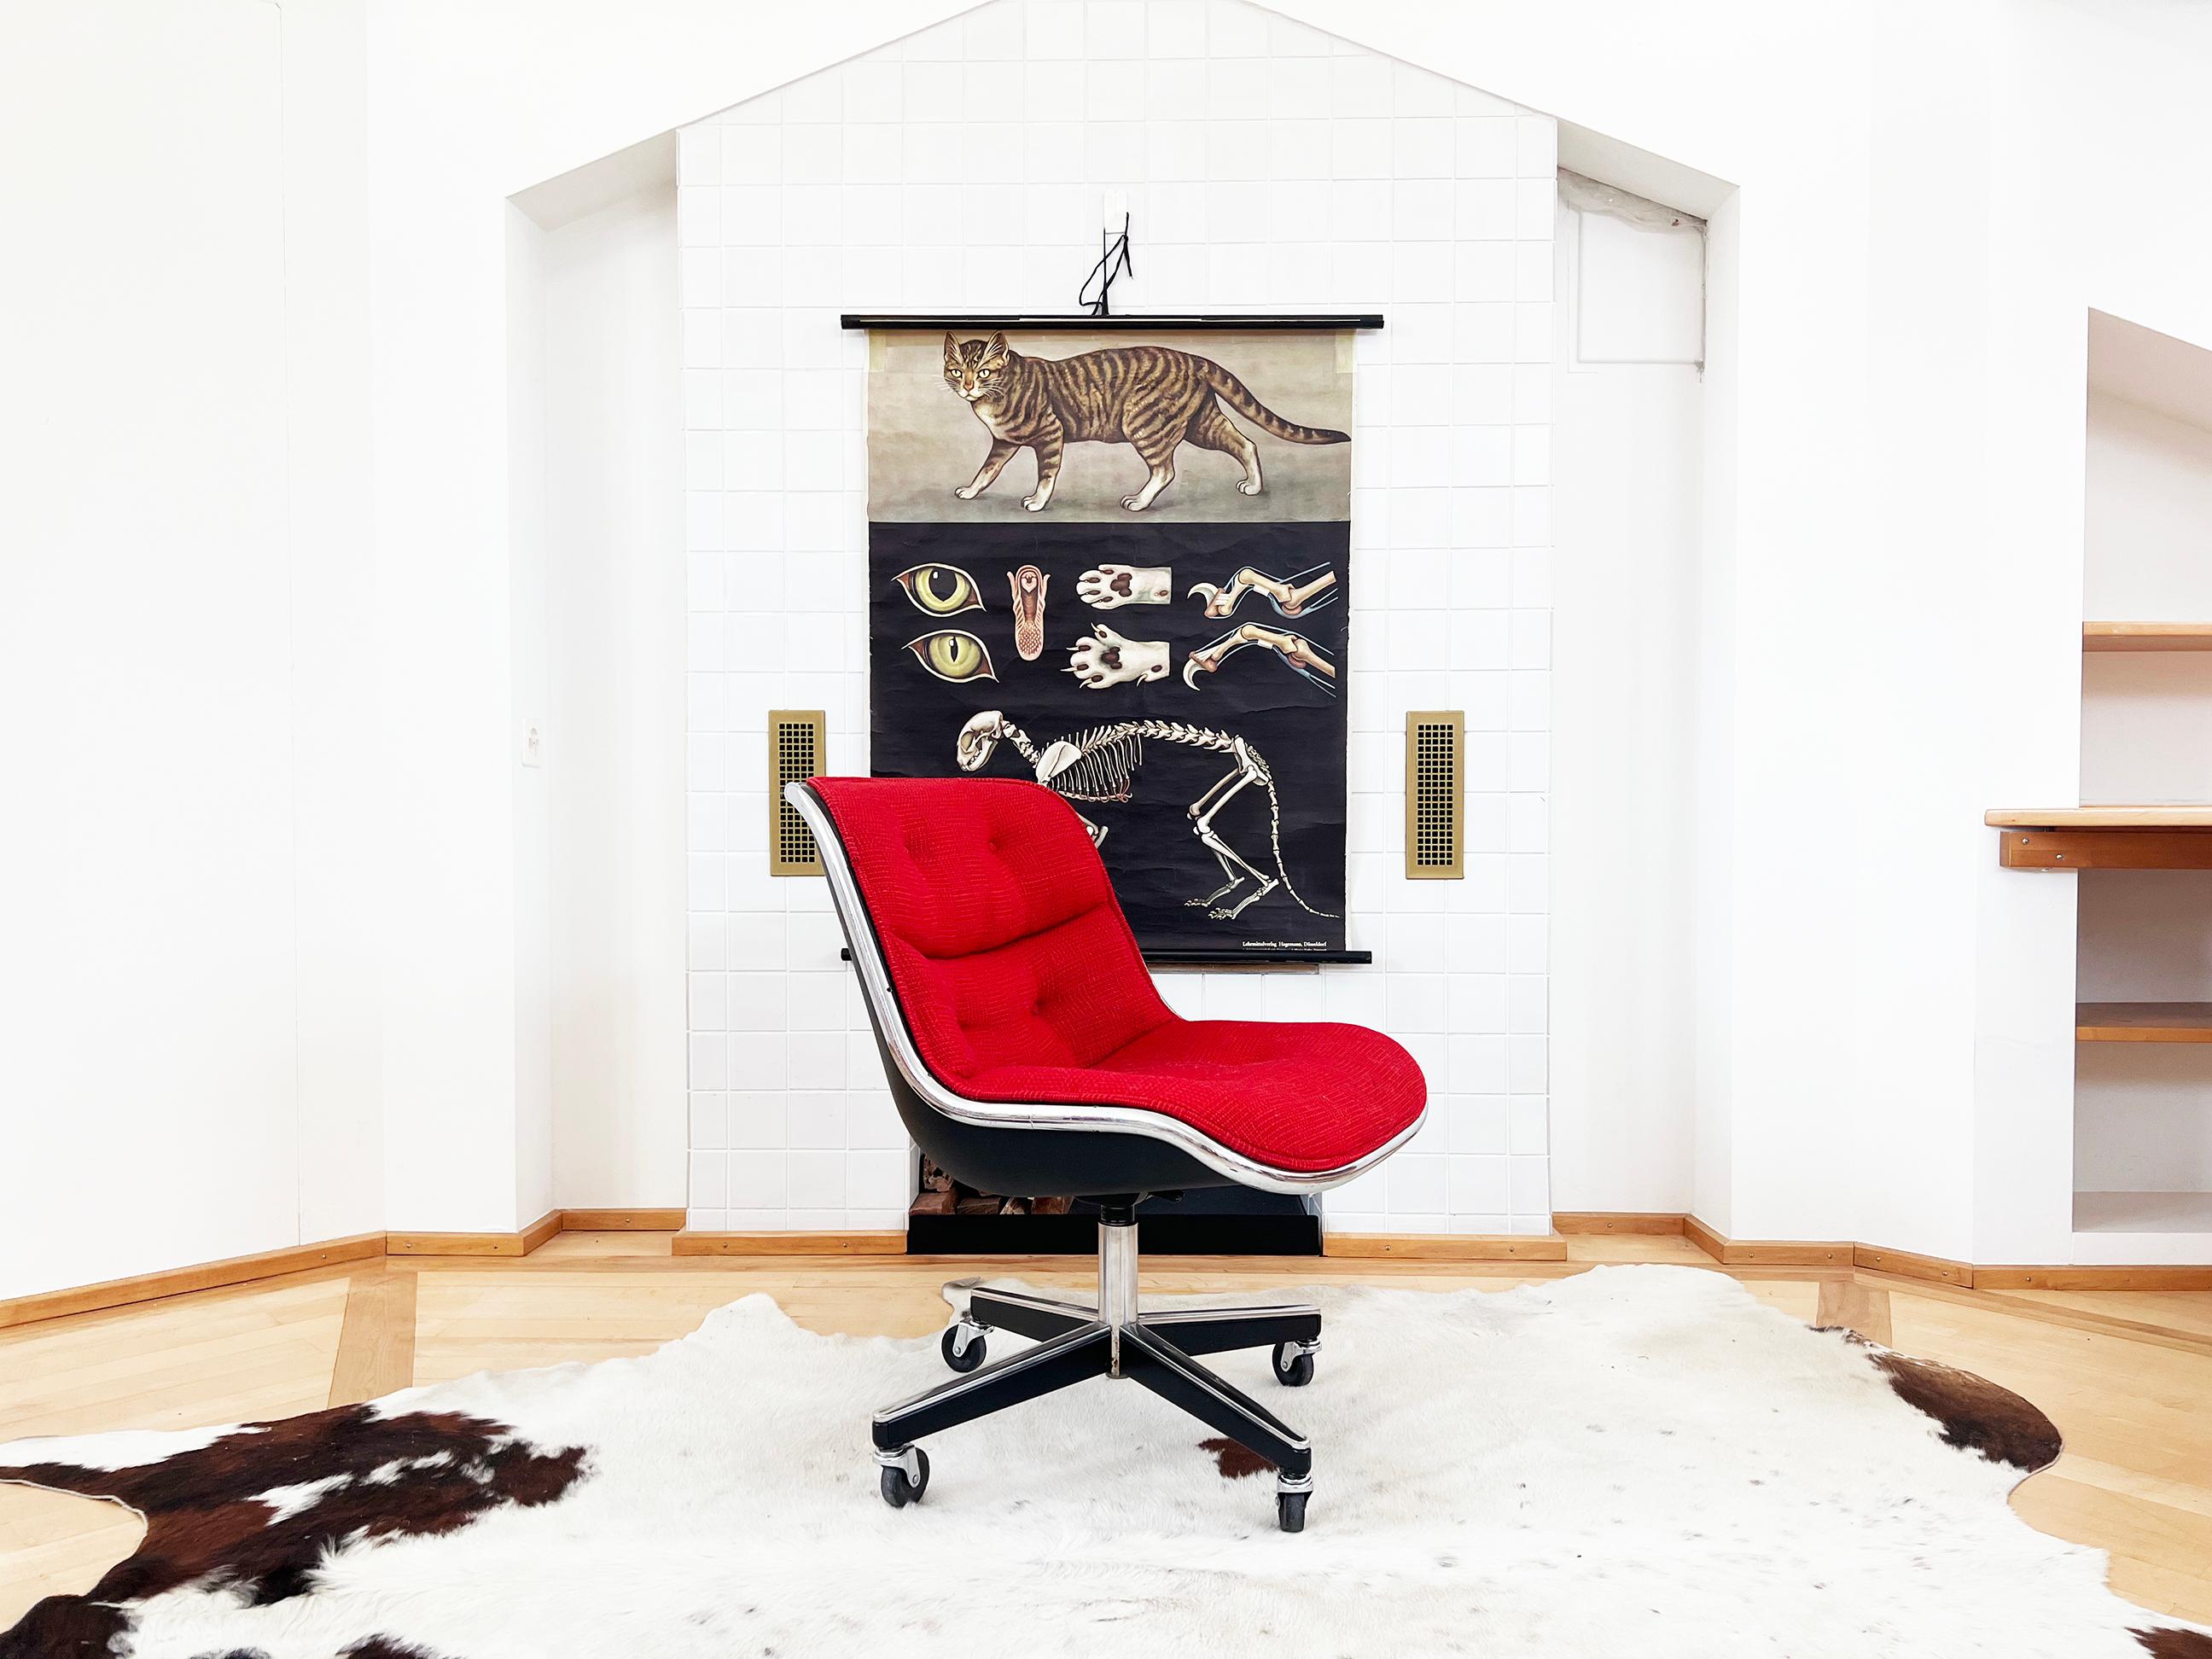 Zwei zur Verfügung, separat verkauft--Original 4 Bein Basis (Sought after!!) Red Knoll Textil und Chrom Mid Century Vintage Knoll Pollock Stuhl--RARE Schönheit-- aus der Ära der Höhe der Schaffung von sowohl atemberaubend großartig gestaltet als